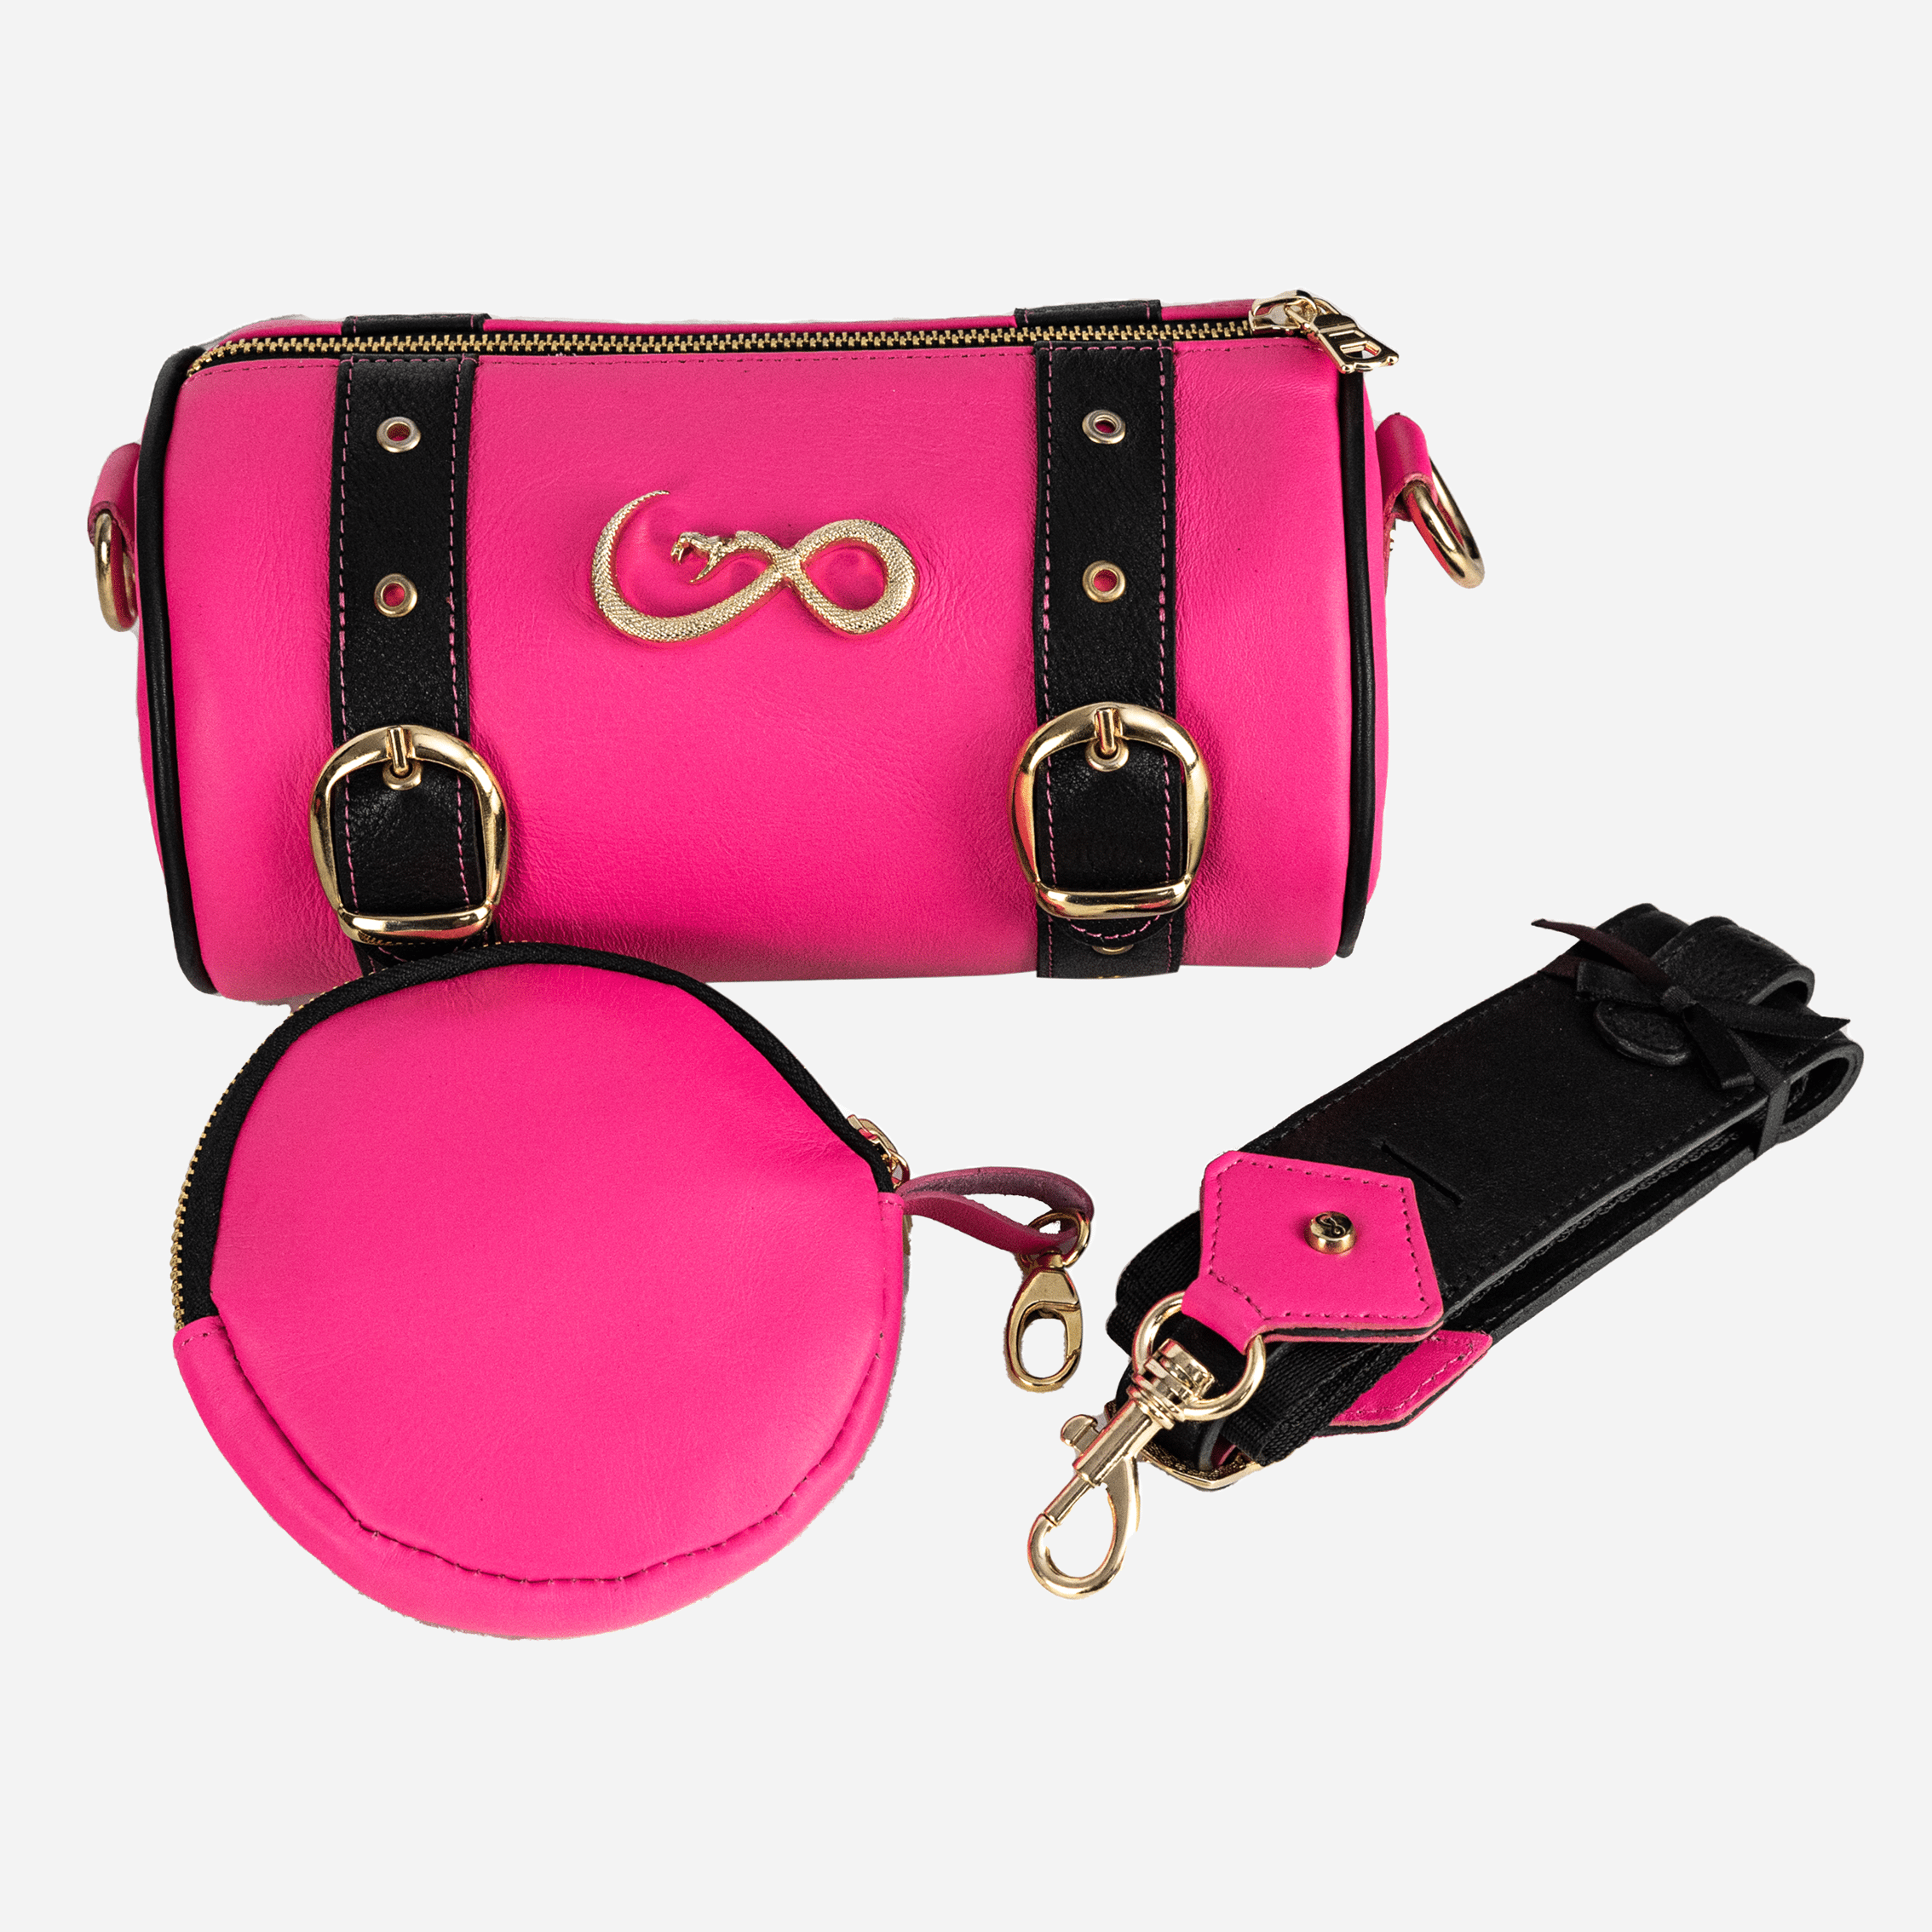 Veneno Leather Goods Bolso "Celeste" - Pink Fever